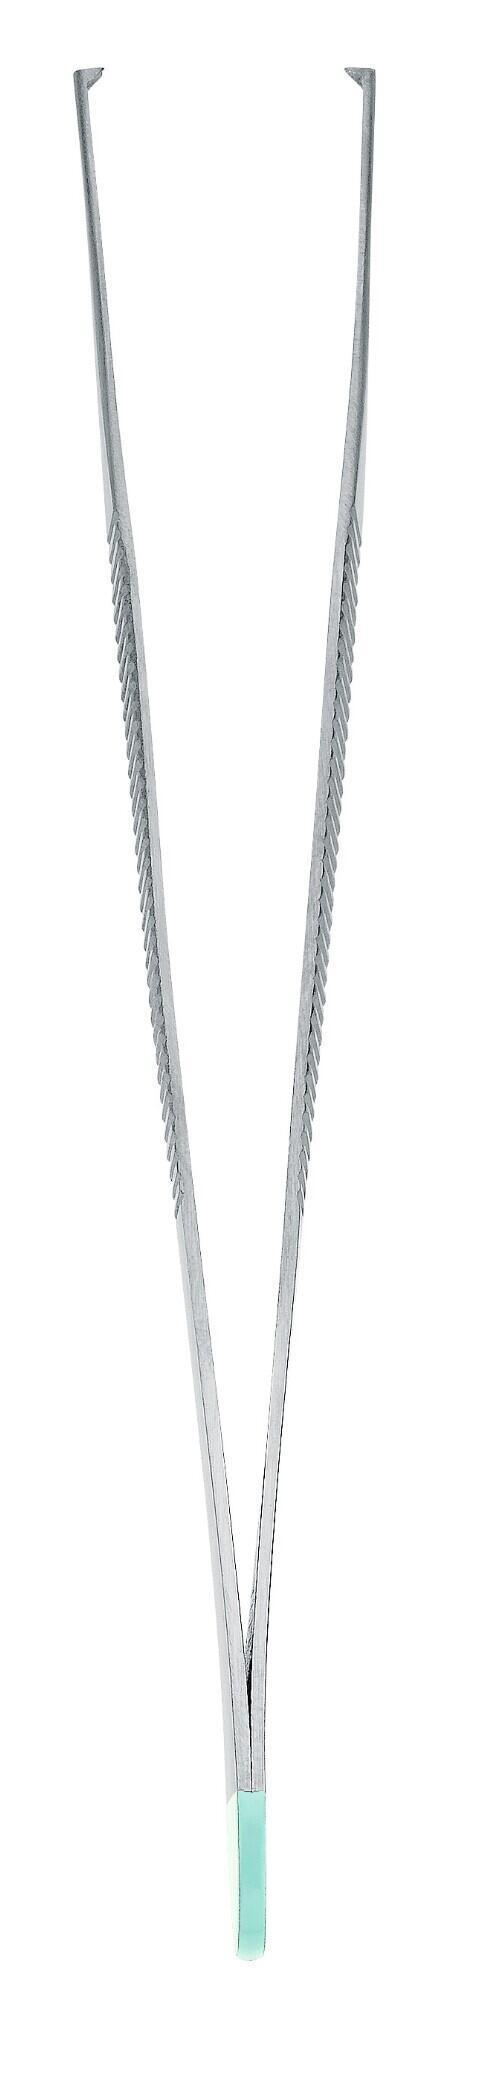 Freckle instrument Adson tweezers straight 12cm